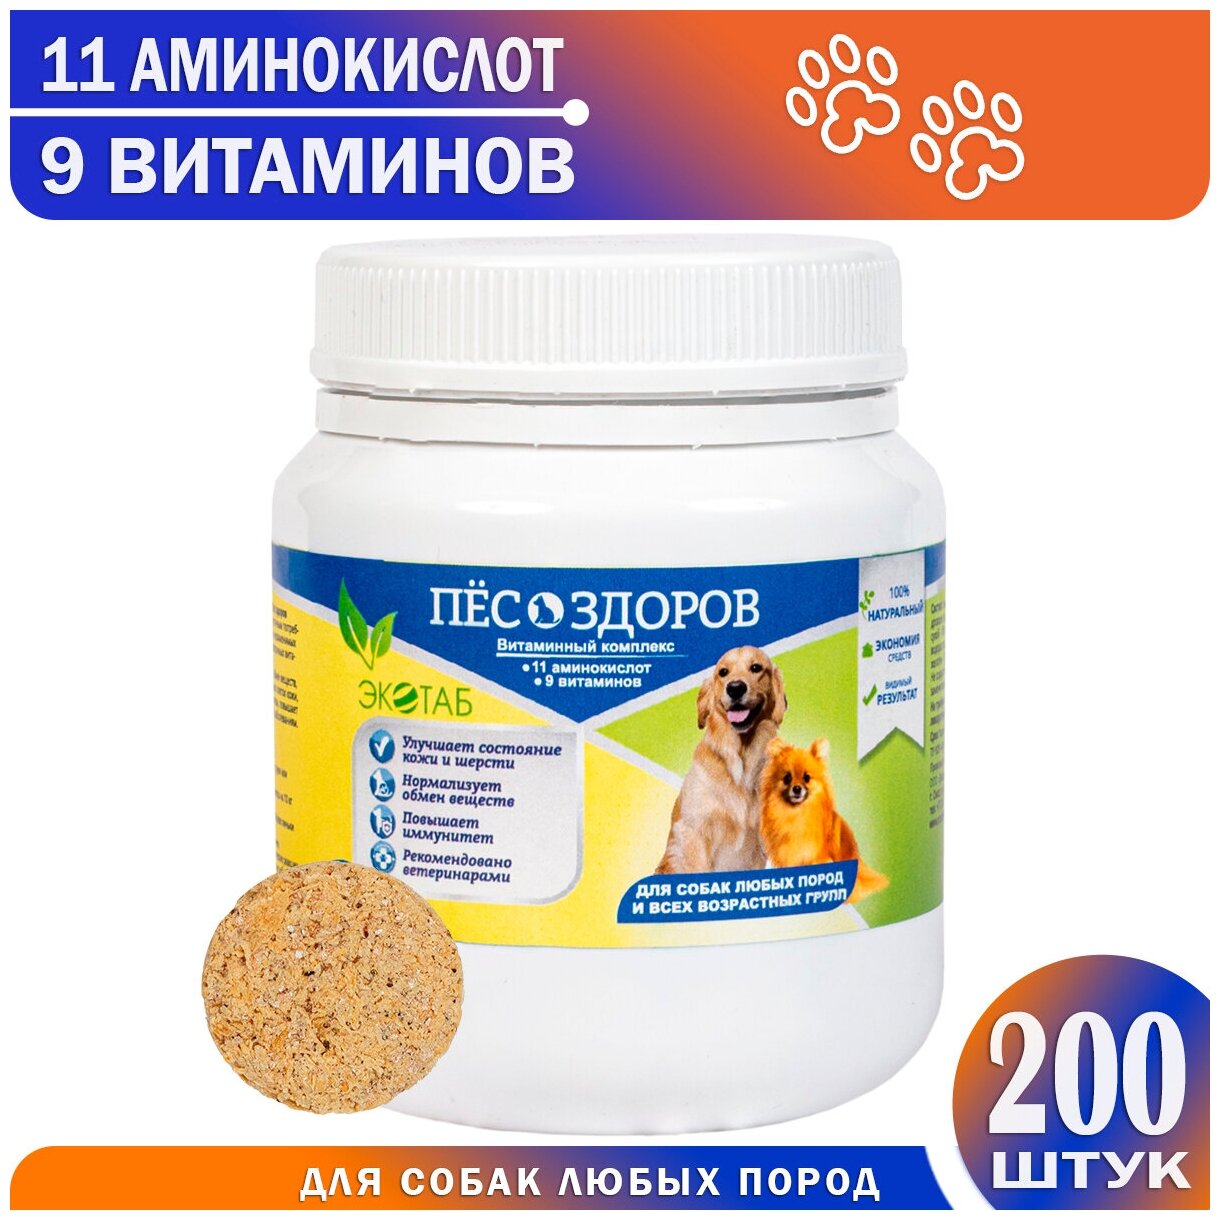 Витамины для собак и щенков крупных, средних и мелких пород / Витаминное лакомство / Мультивитамины / Комплекс витаминов для беременных и кормящих